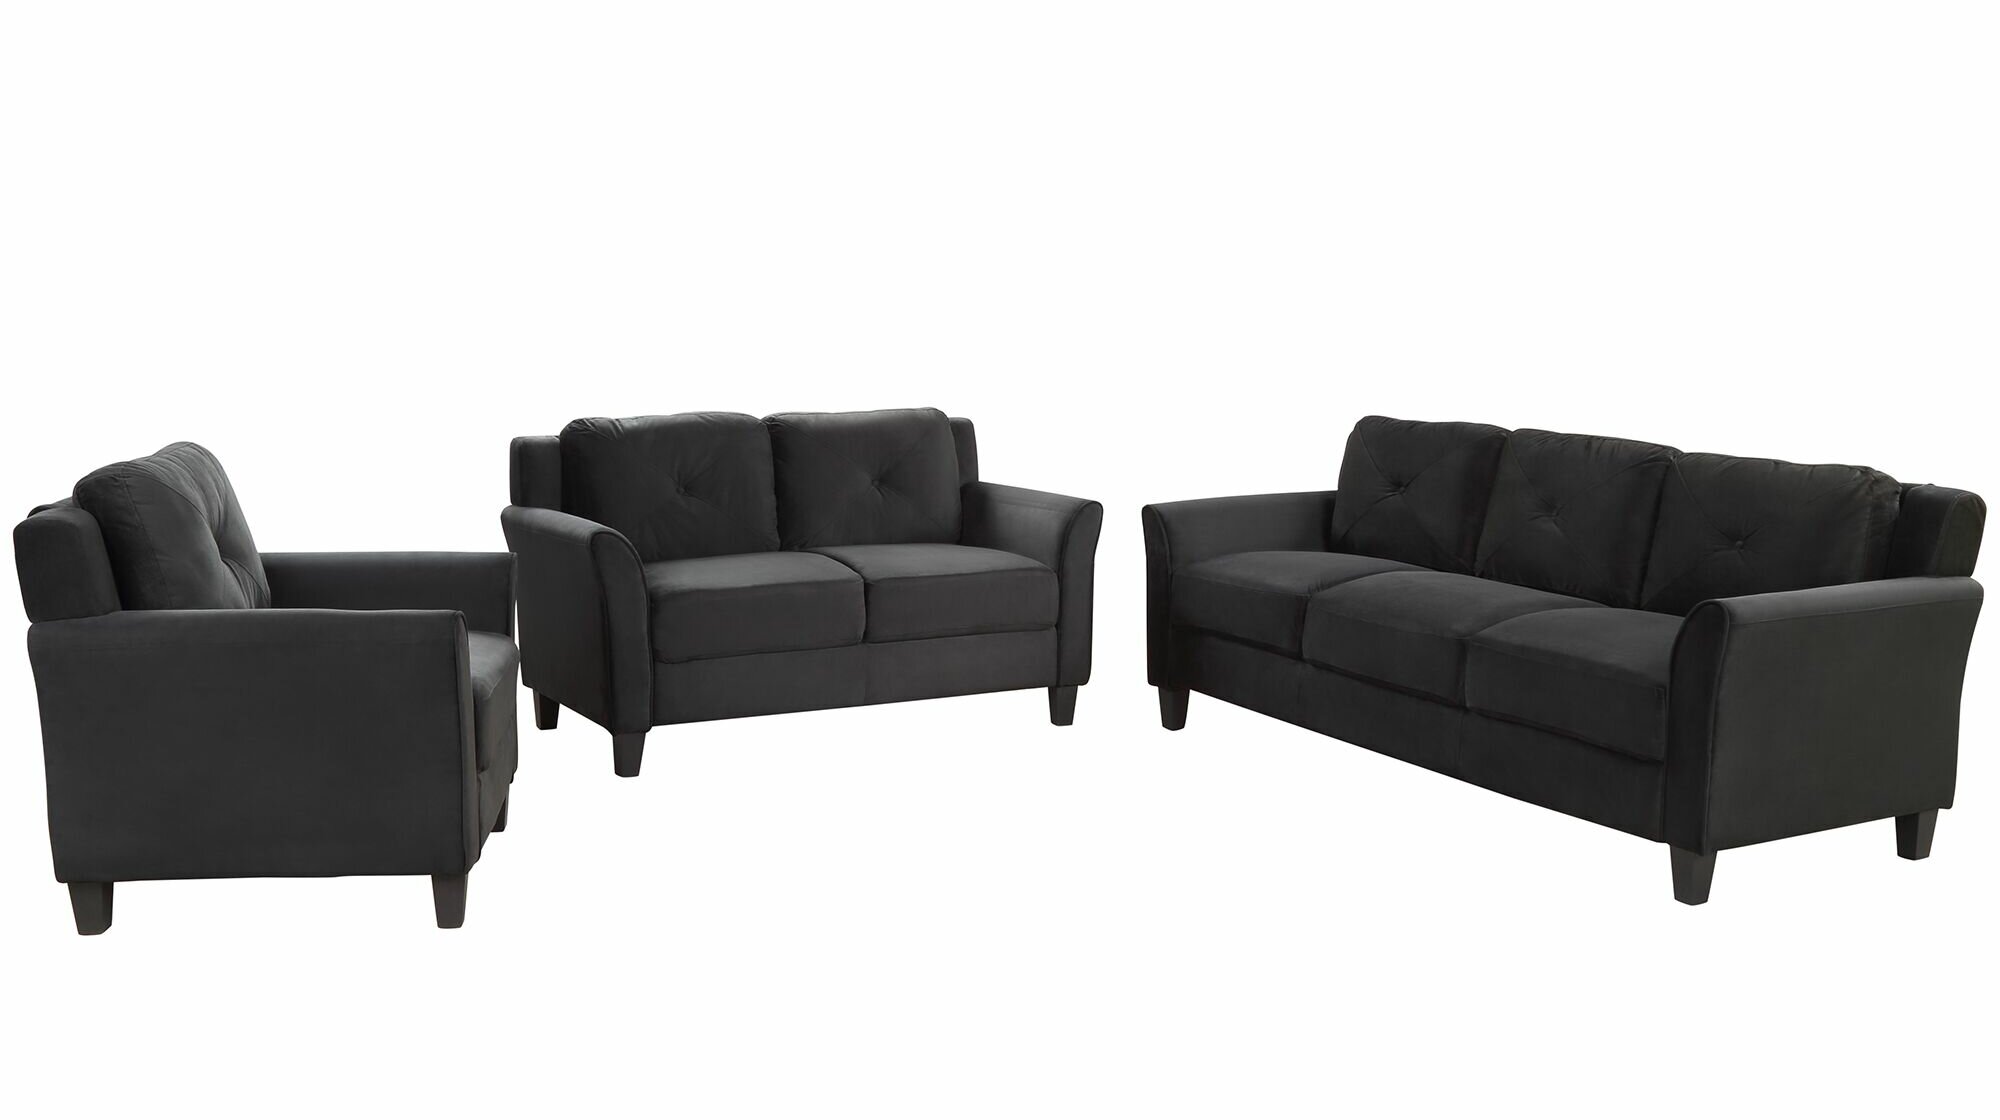 Zipcode Design Wistow 3 Piece Living Room Set Reviews Wayfair